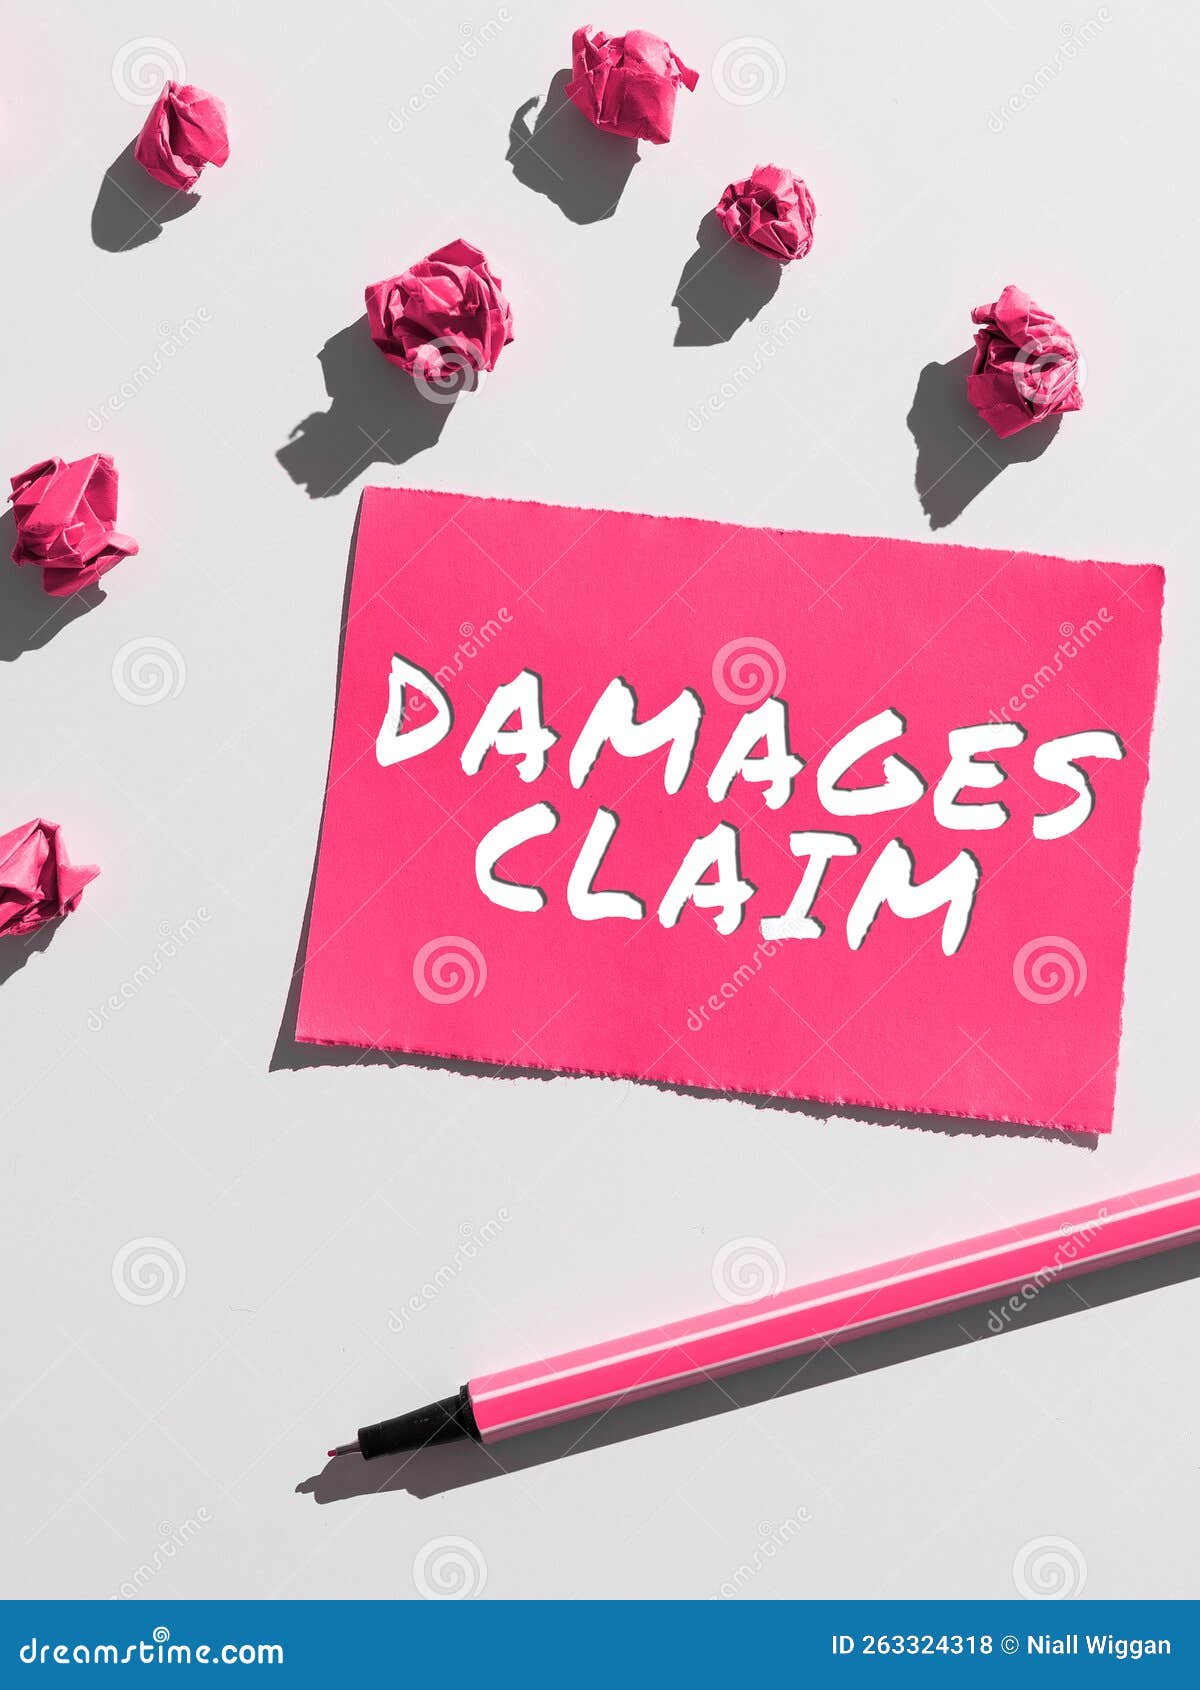 handwriting text damages claim. internet concept demand compensation litigate insurance file suit